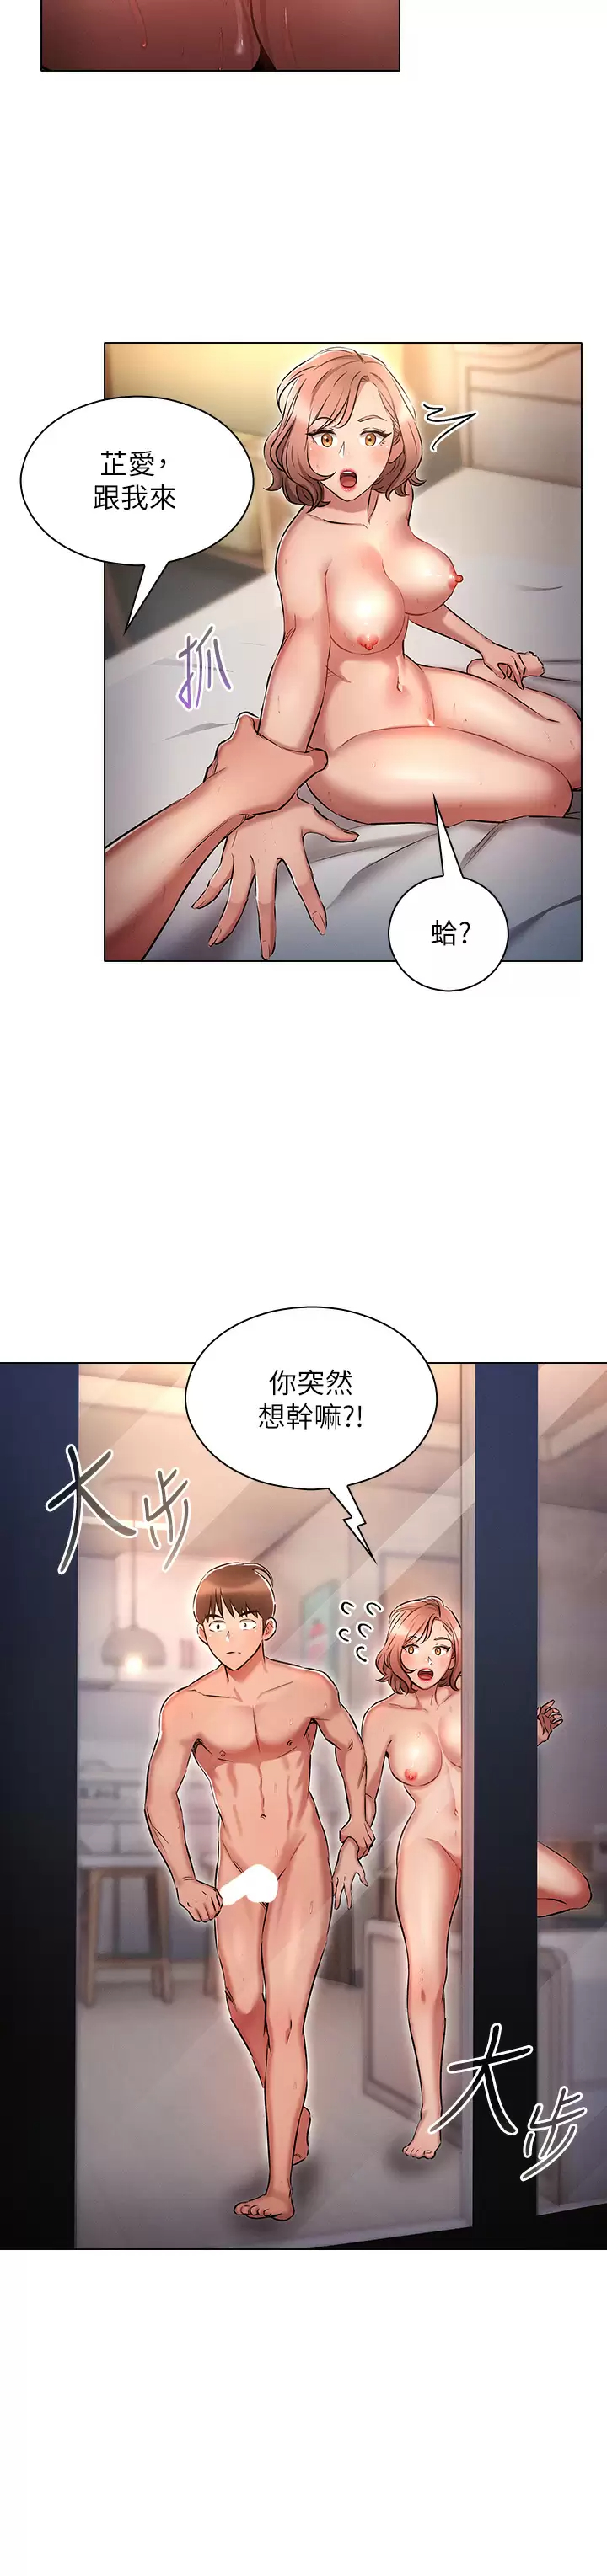 韩国污漫画 魯蛇的多重宇宙 第14话 挑战窗边暴露性爱! 27